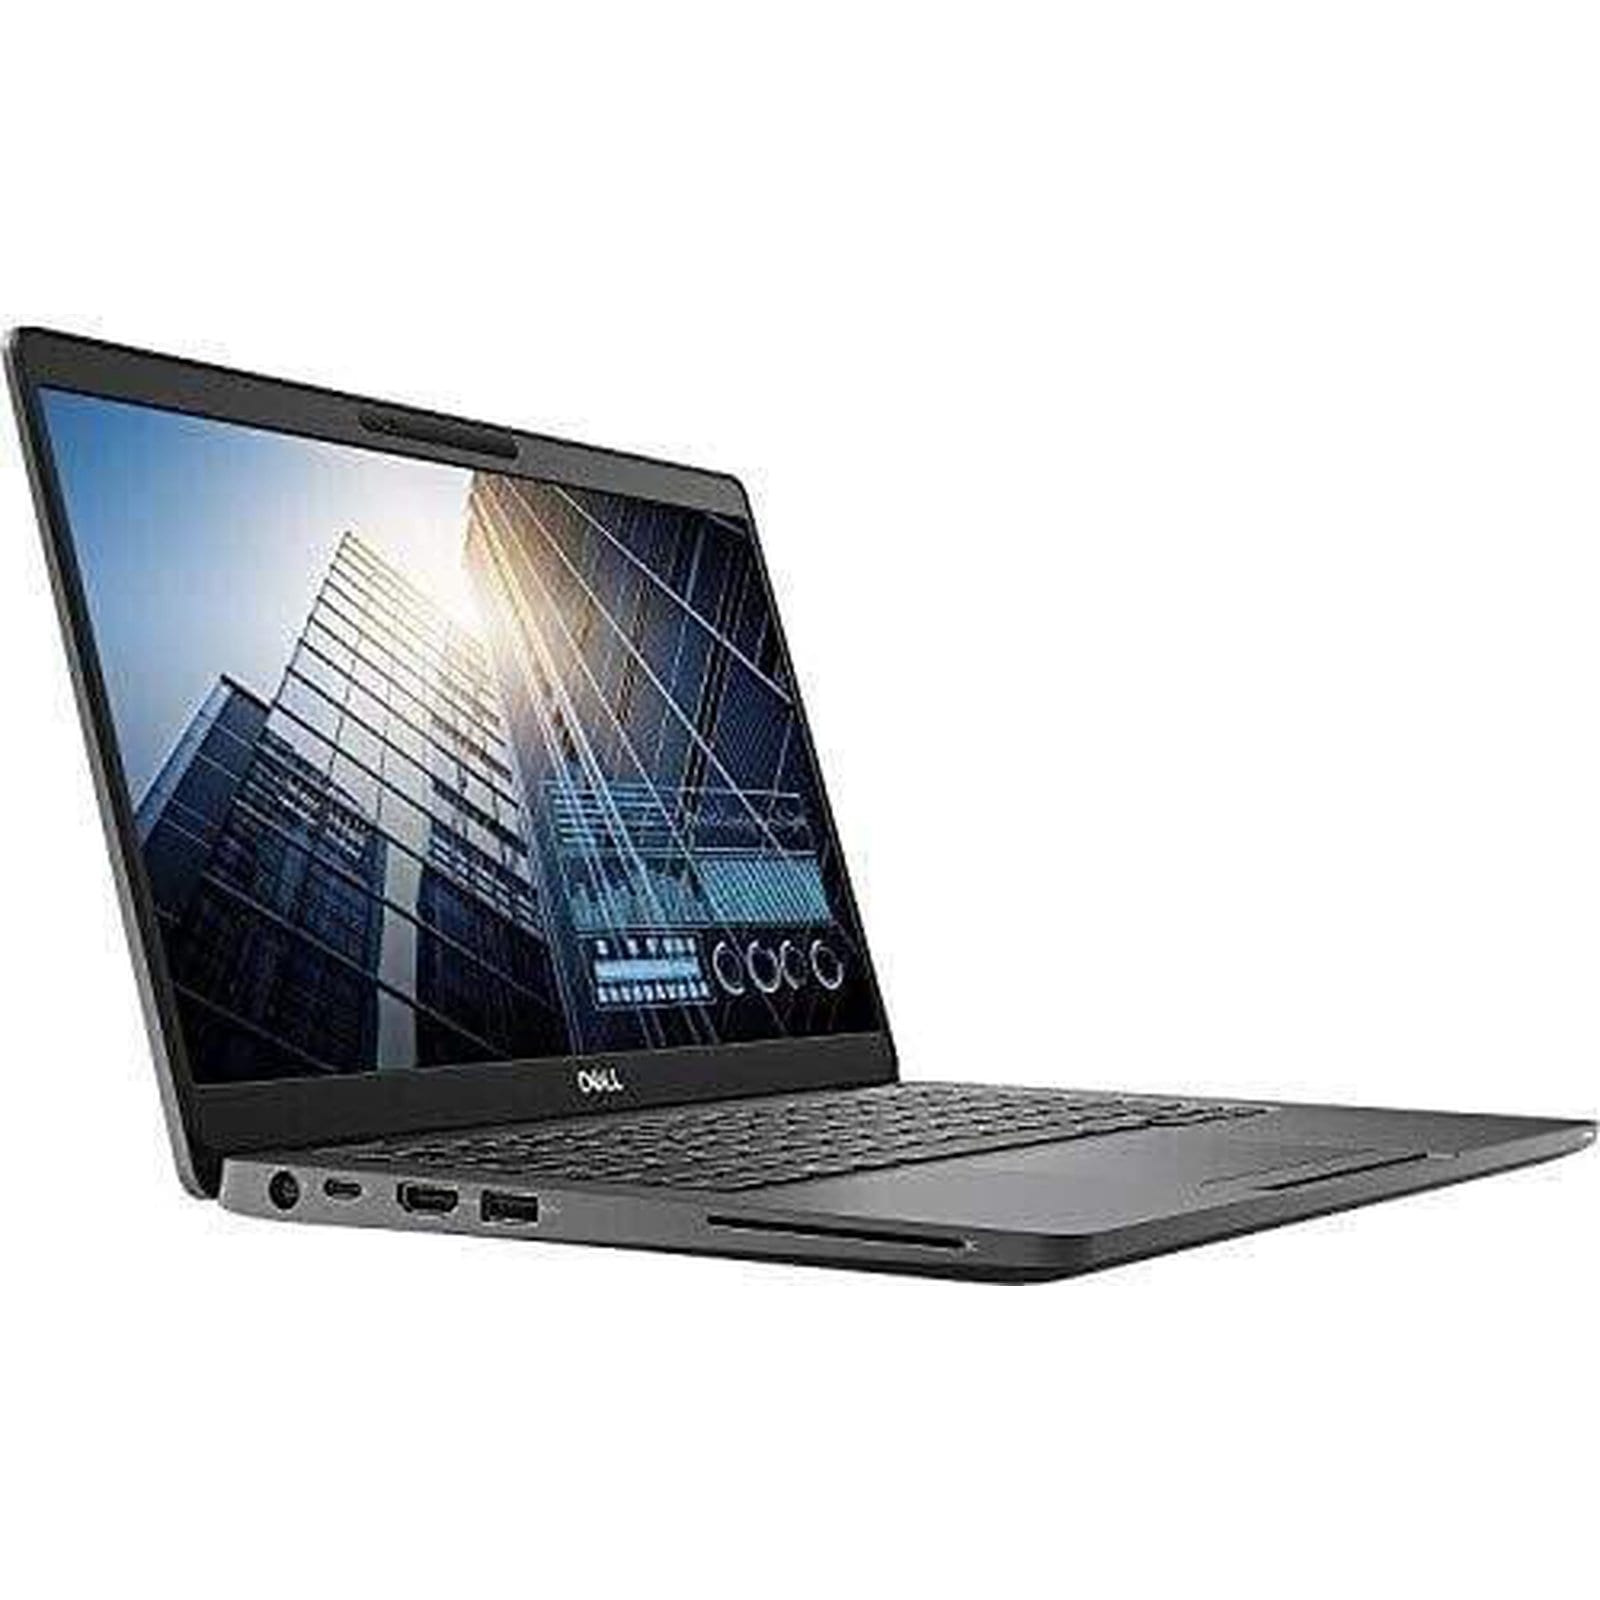 BSB-TTMQ7F2EDE53KFER-NEW-NEW-LAP-DL 2019 Dell Latitude 5300 Laptop 13.3" - i5 - i5-8265U - Quad Core 3.9Ghz - 256GB SSD - 8GB RAM - 1920x1080 FHD - Windows 10 Pro Black